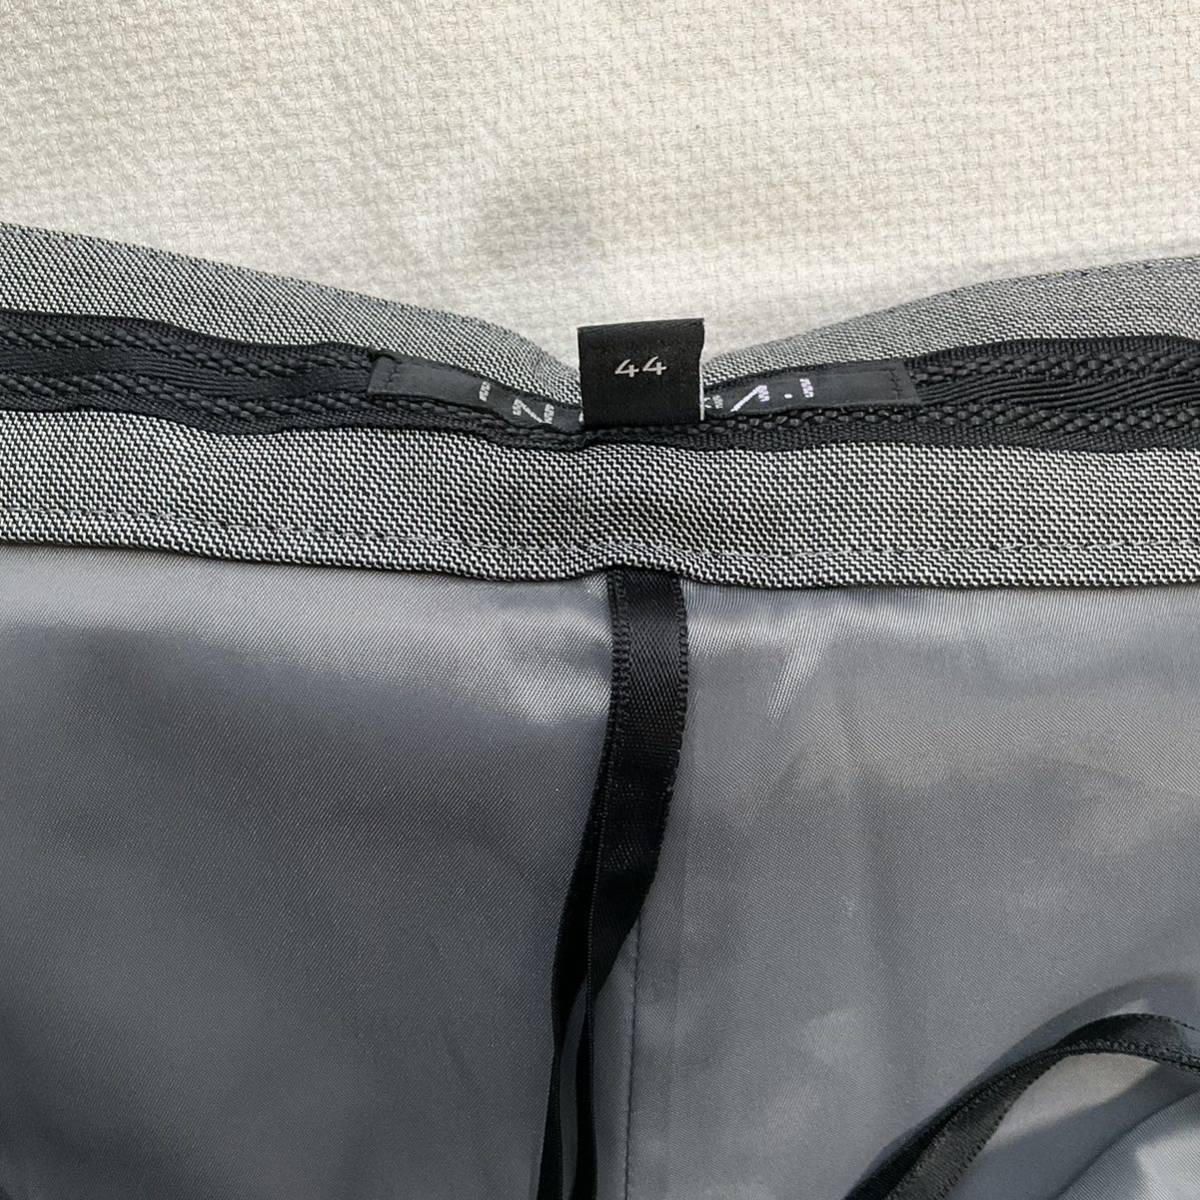 [ очень красивый товар ] Indivi INDIVI брюки 44 сделано в Японии конический OL бизнес шелк весна лето осень Италия производства ткань 